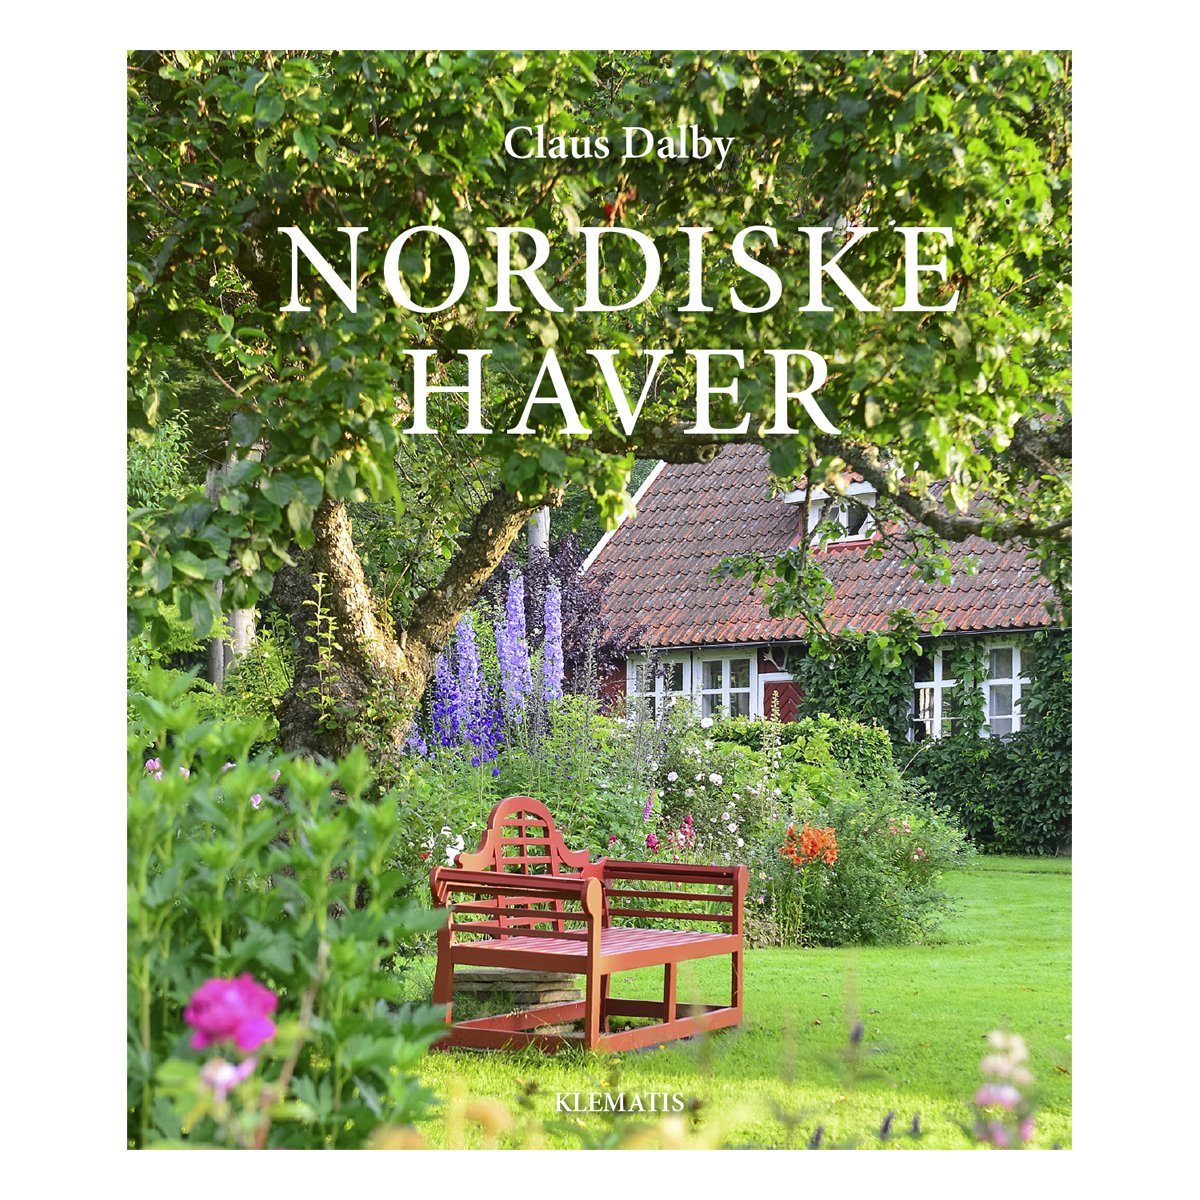 Nordiske haver